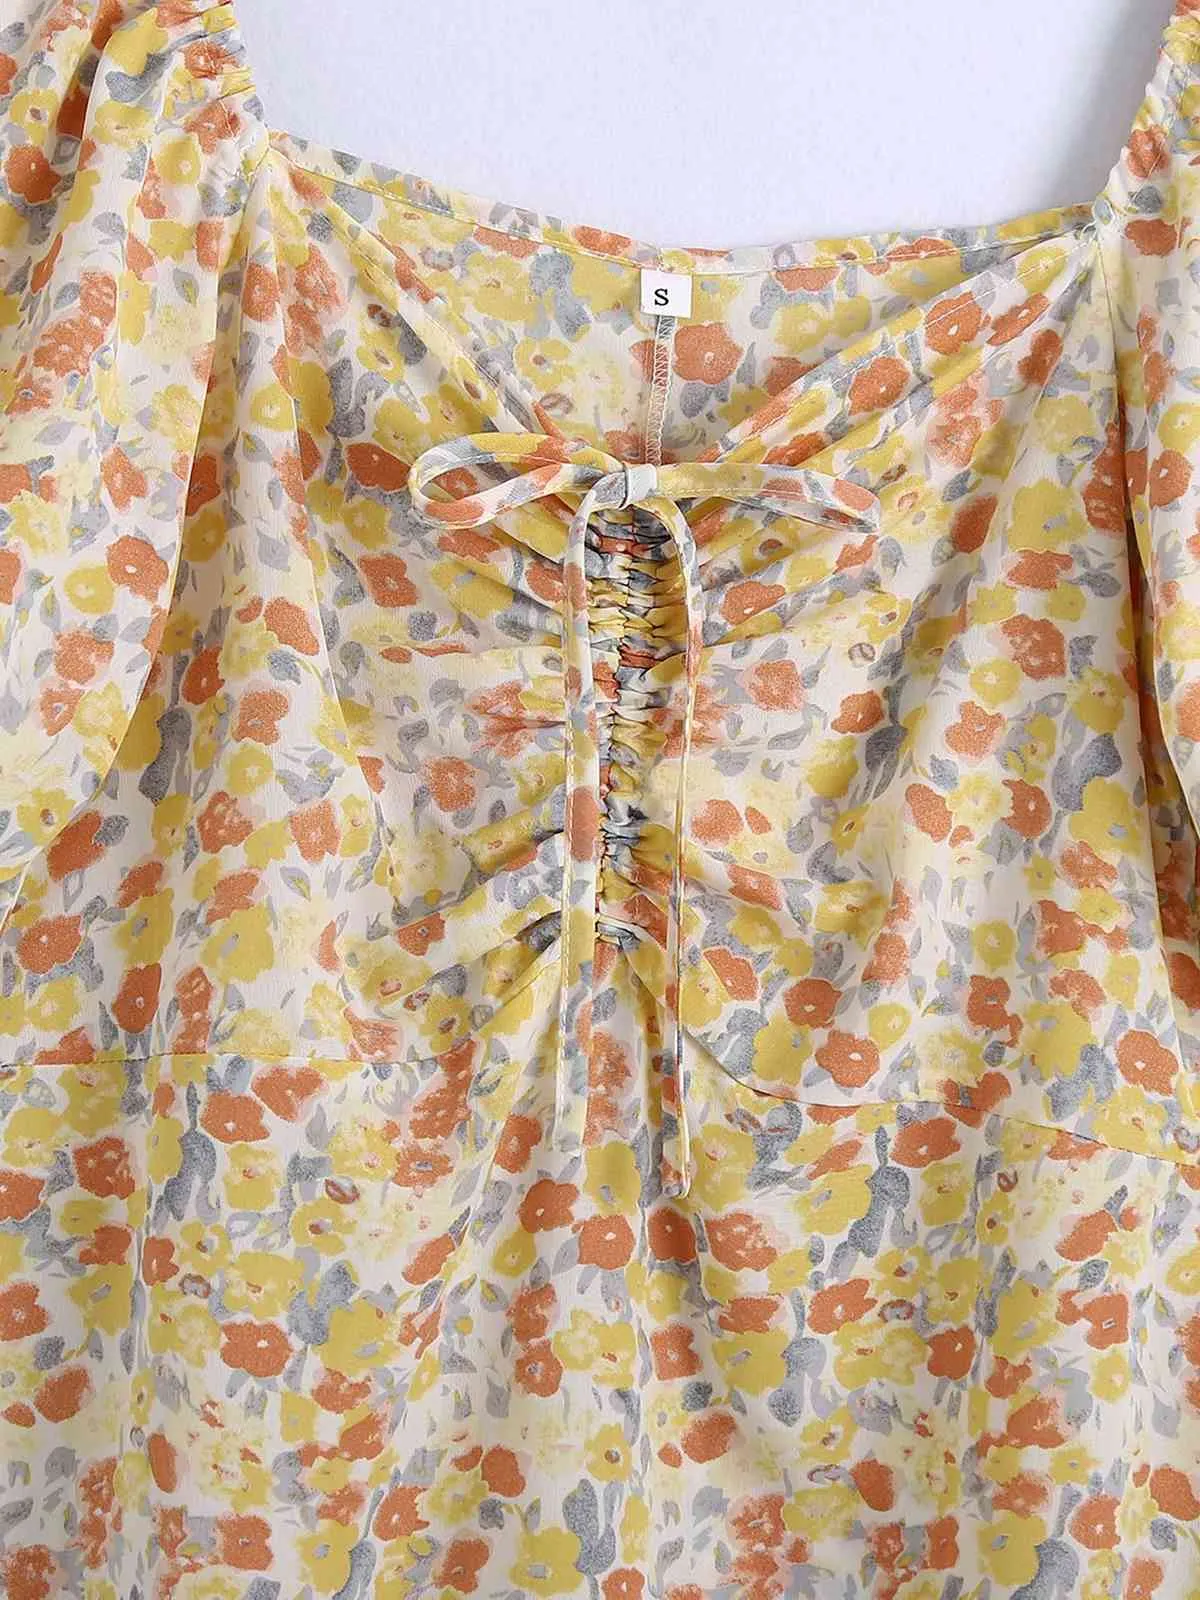 Vintage Square Neck Kurzarm Frauen Blumen Kleid Mode Taille Puff Sleeve Chic Weibliche Mini Kleider 210507